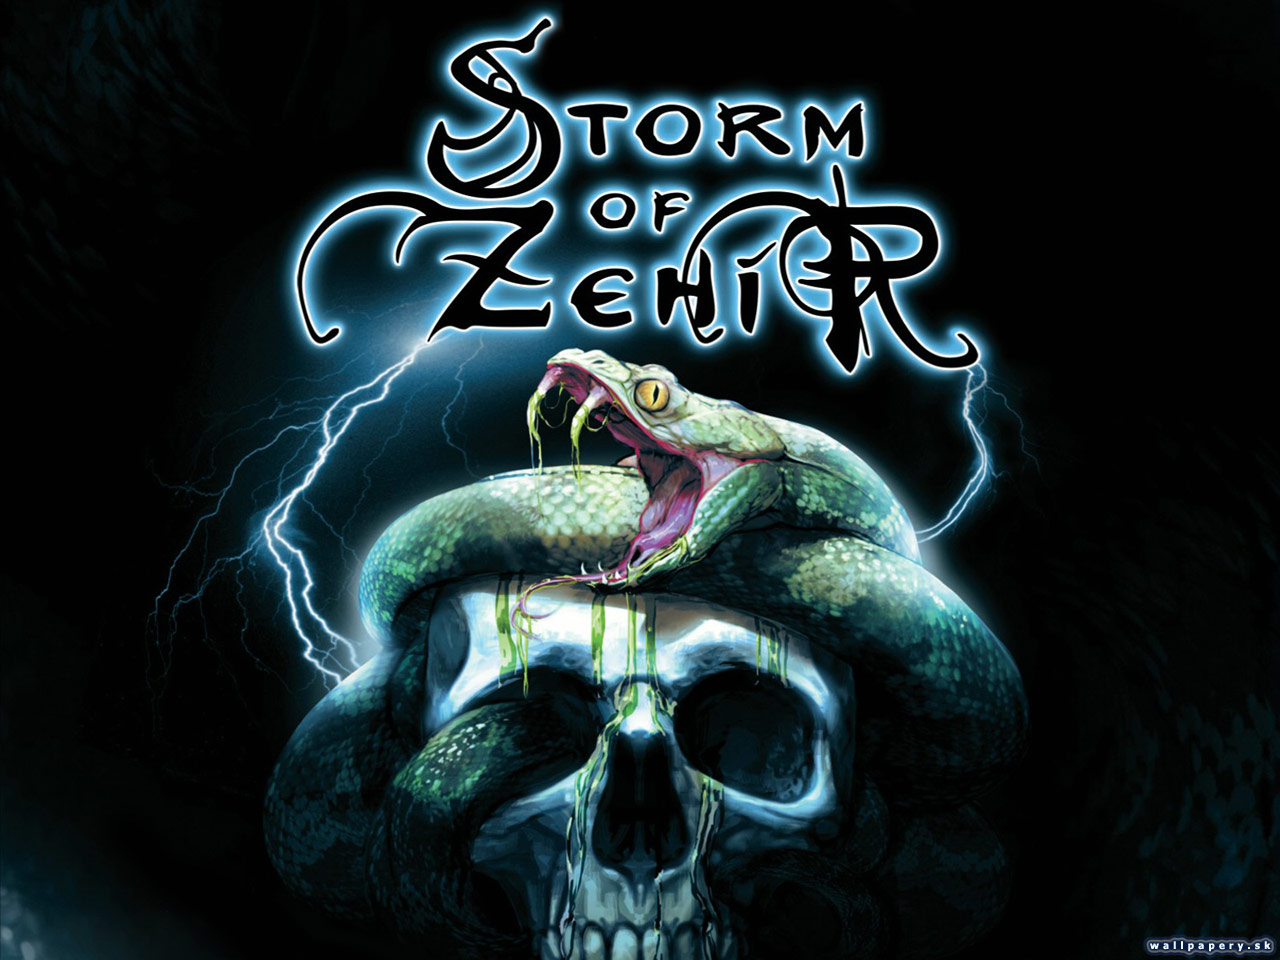 Neverwinter Nights 2: Storm of Zehir - wallpaper 1